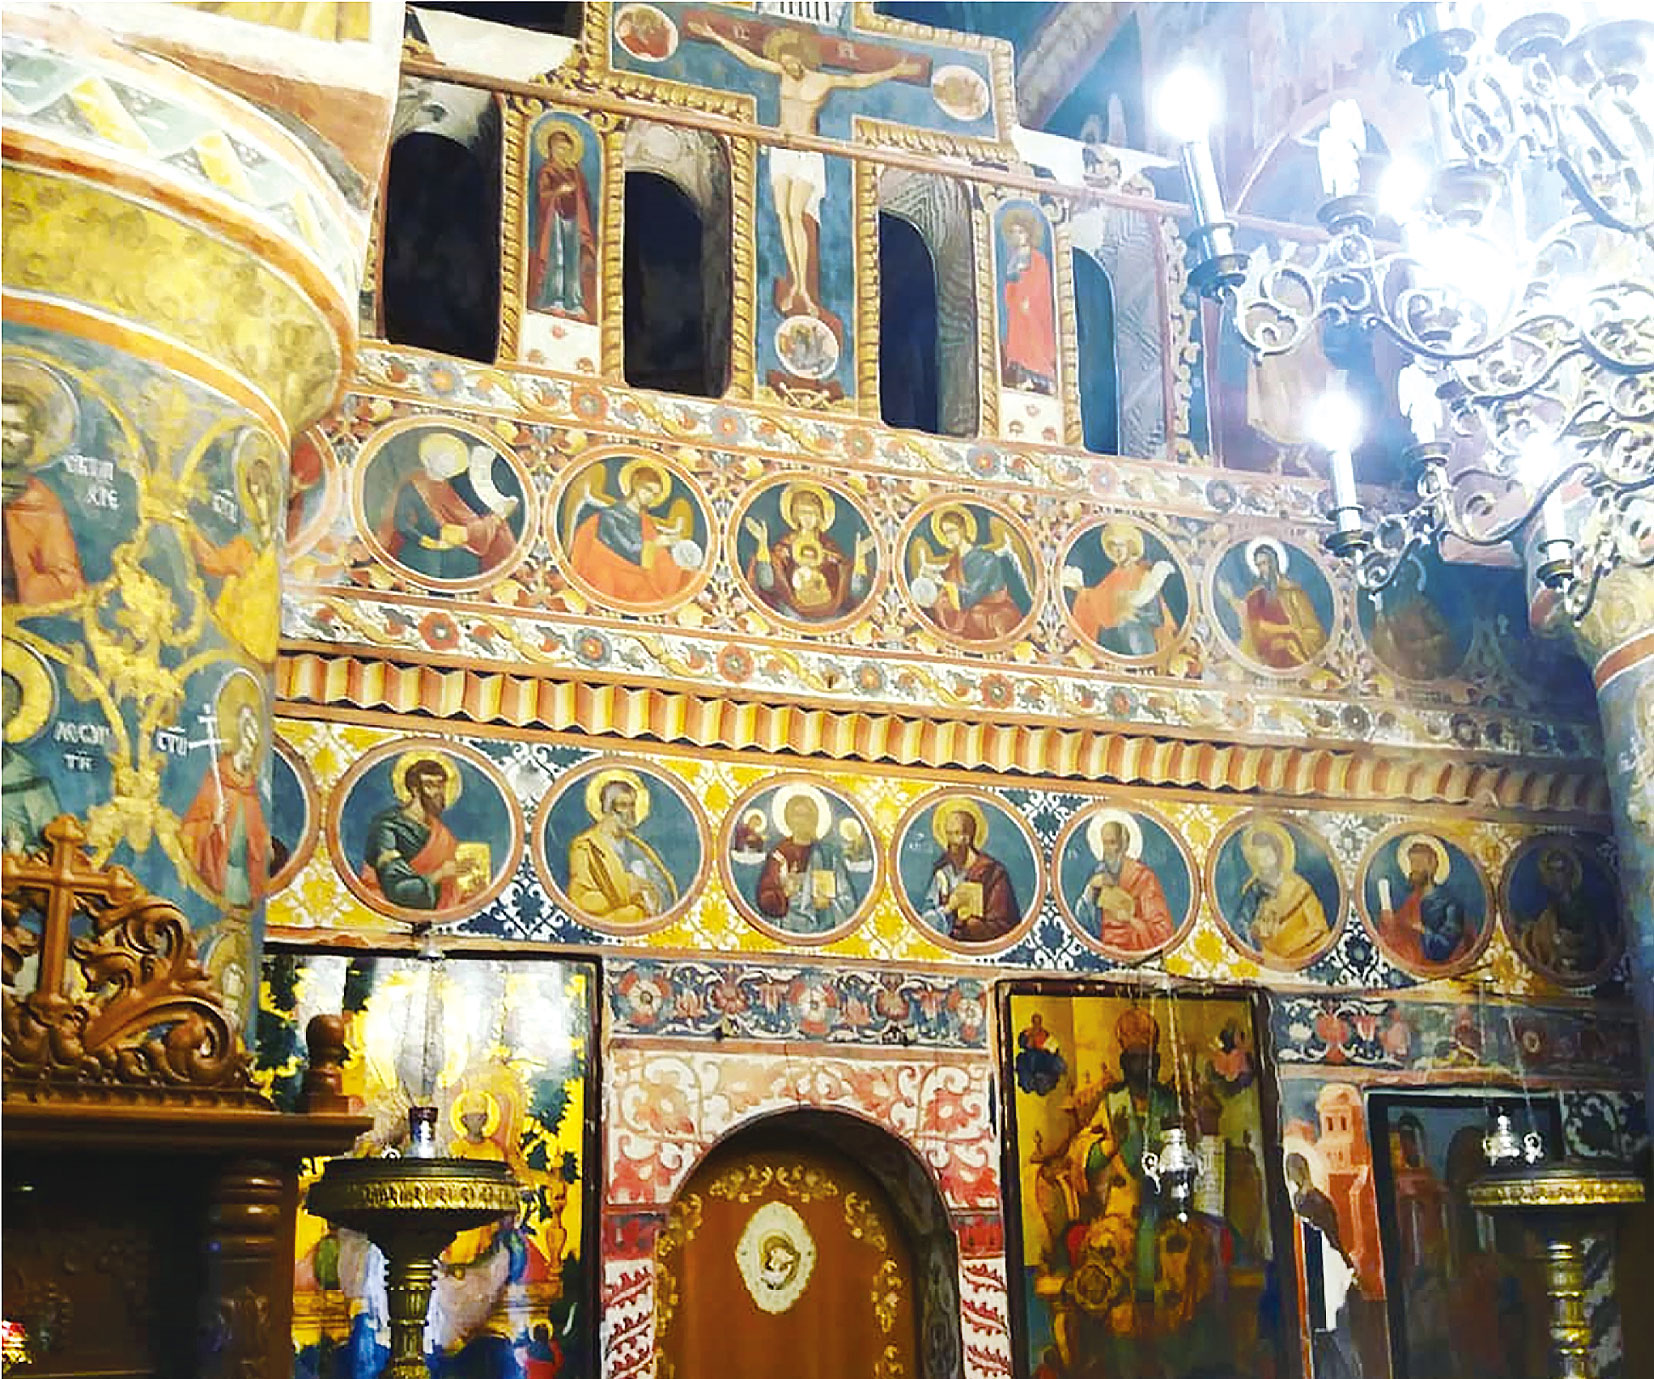 Manastirea Snagov interior